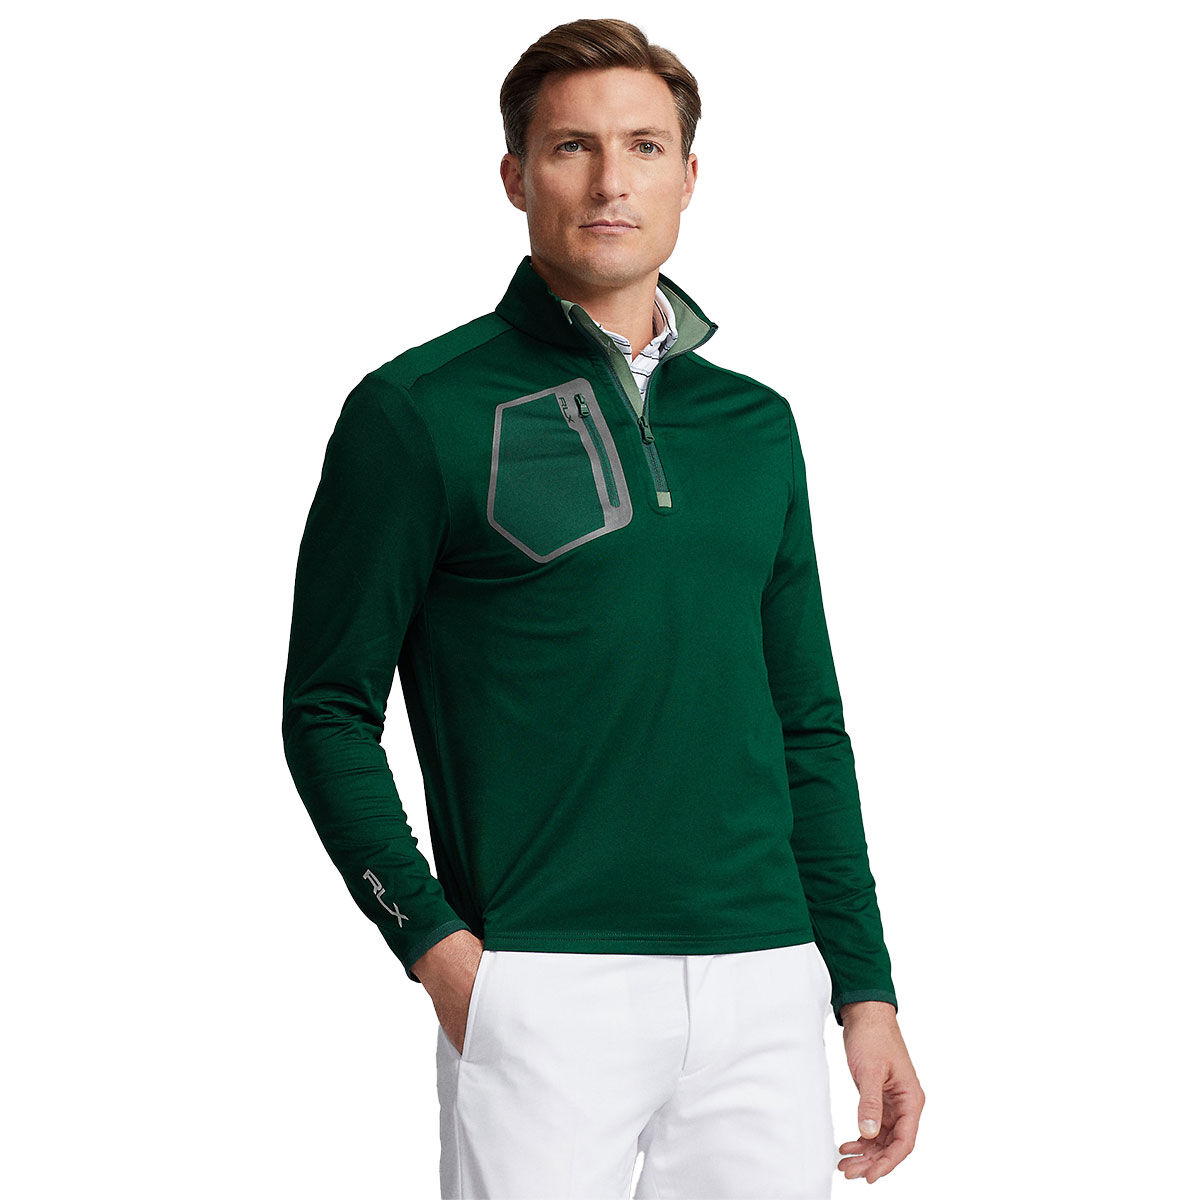 Ralph Lauren Men’s Luxury Jersey Quarter Zip Golf Mid Layer, Mens, Moss agate, Small | American Golf